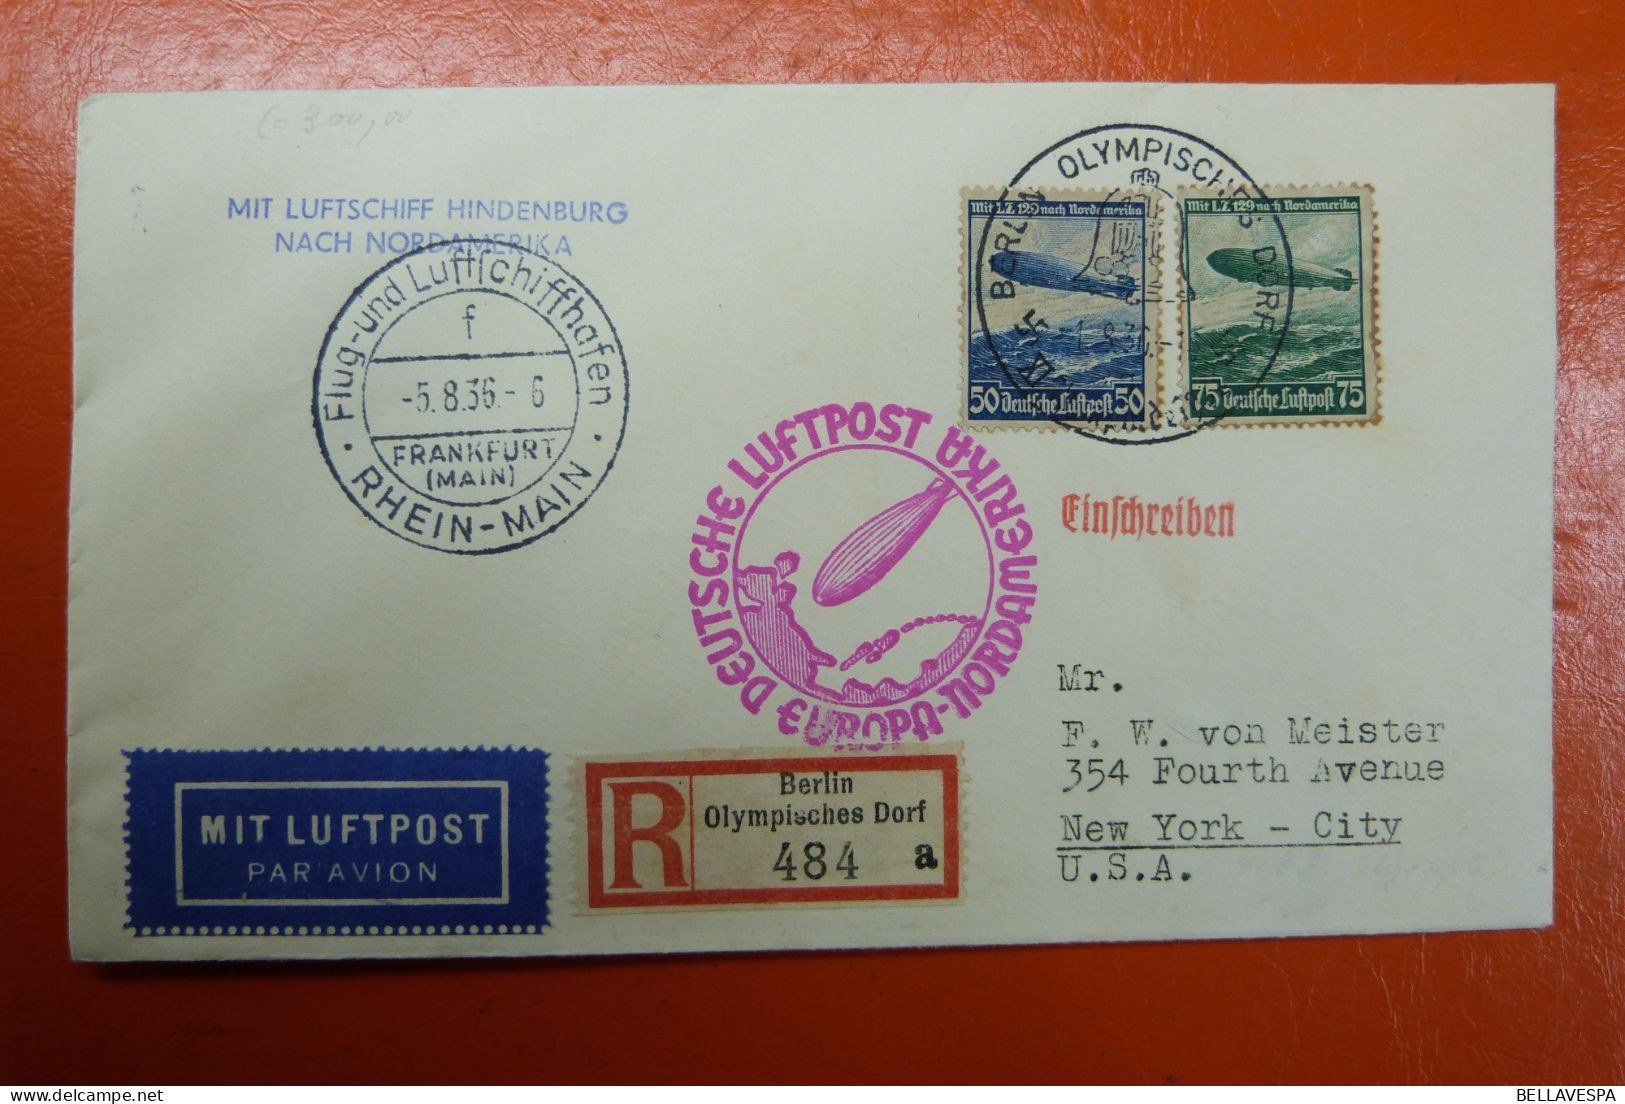 Luftschiff HINDENBURG 05.08.1936  Berlin Olympisch Dorf 484 A /Einschreiben DEUTSCHE LUFTPOST  Ney-York Madison Square - Luft- Und Zeppelinpost